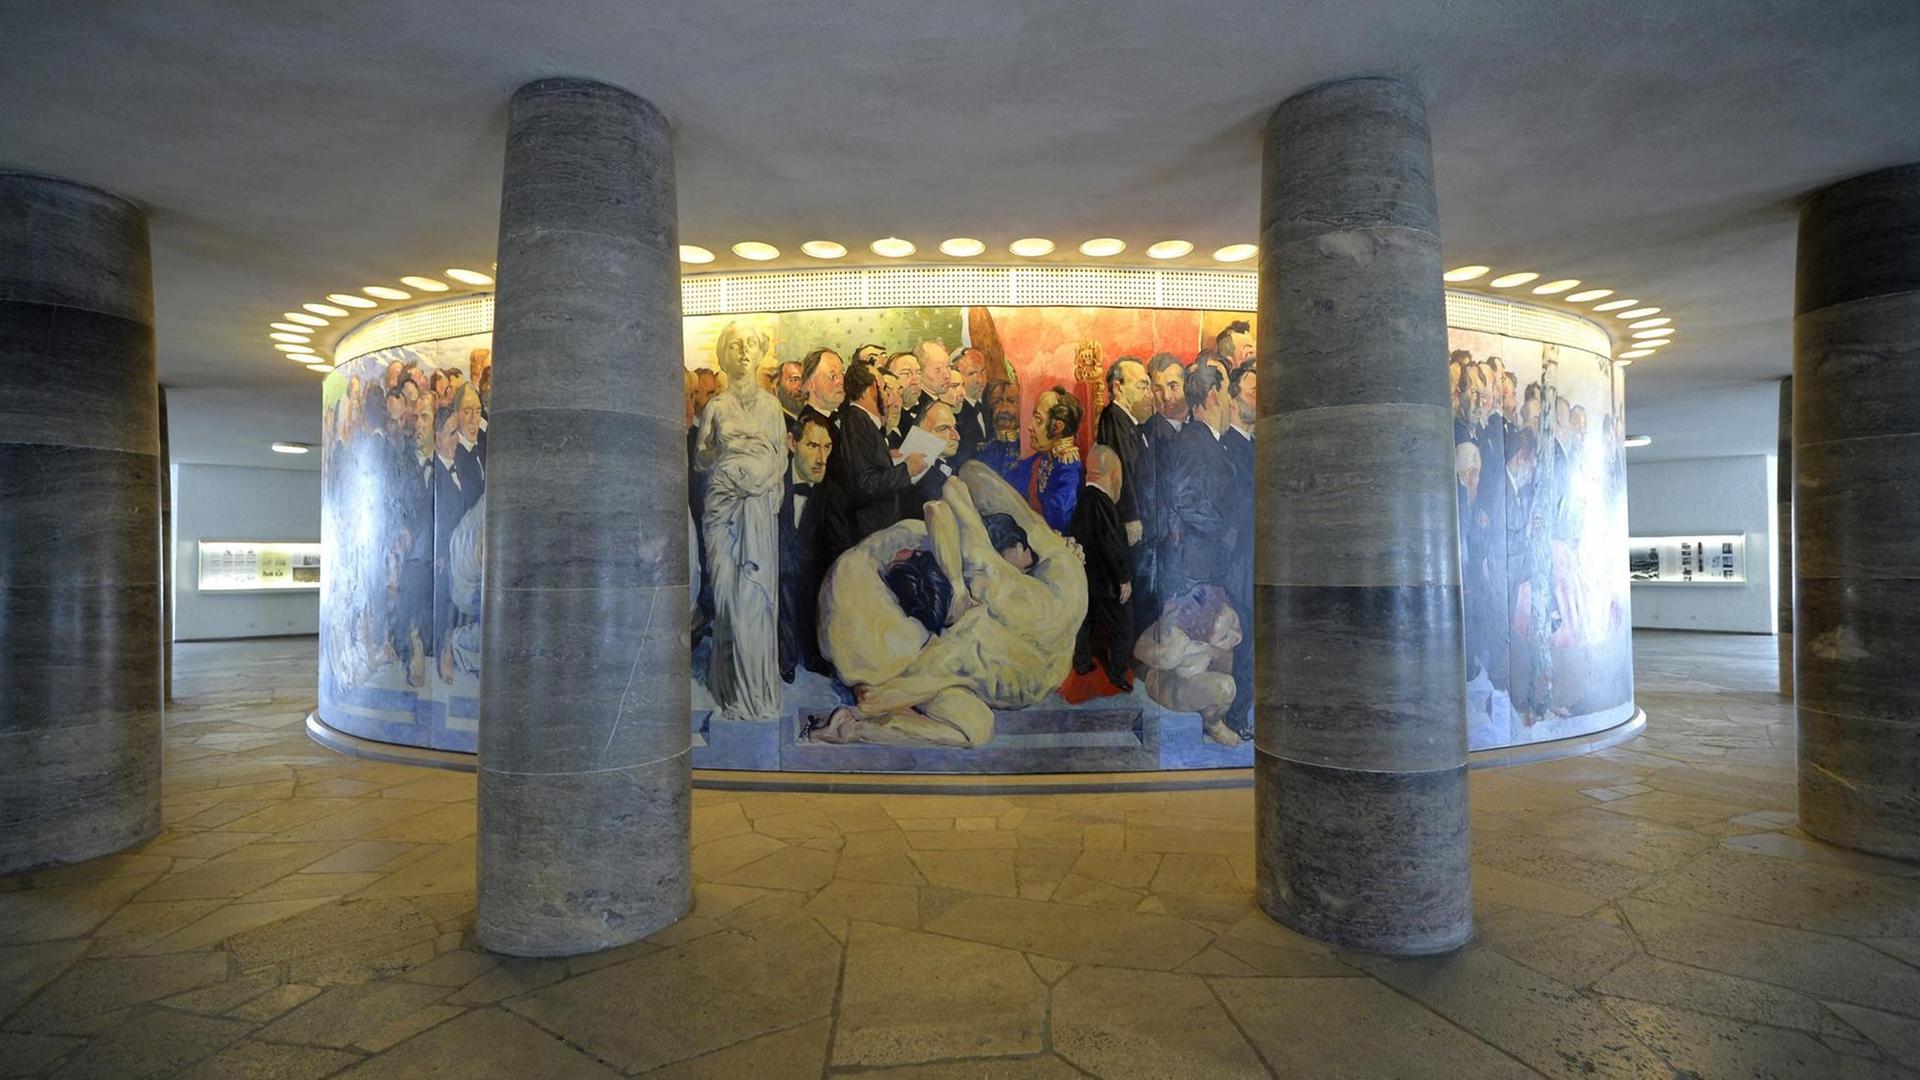 Ausschnitt aus dem Wandgemälde "Der Zug der Volksvertreter" von Johannes Grützke, auf der Innenseite des ovalen Wandelganges in der Paulskirche, Frankfurt am Main.